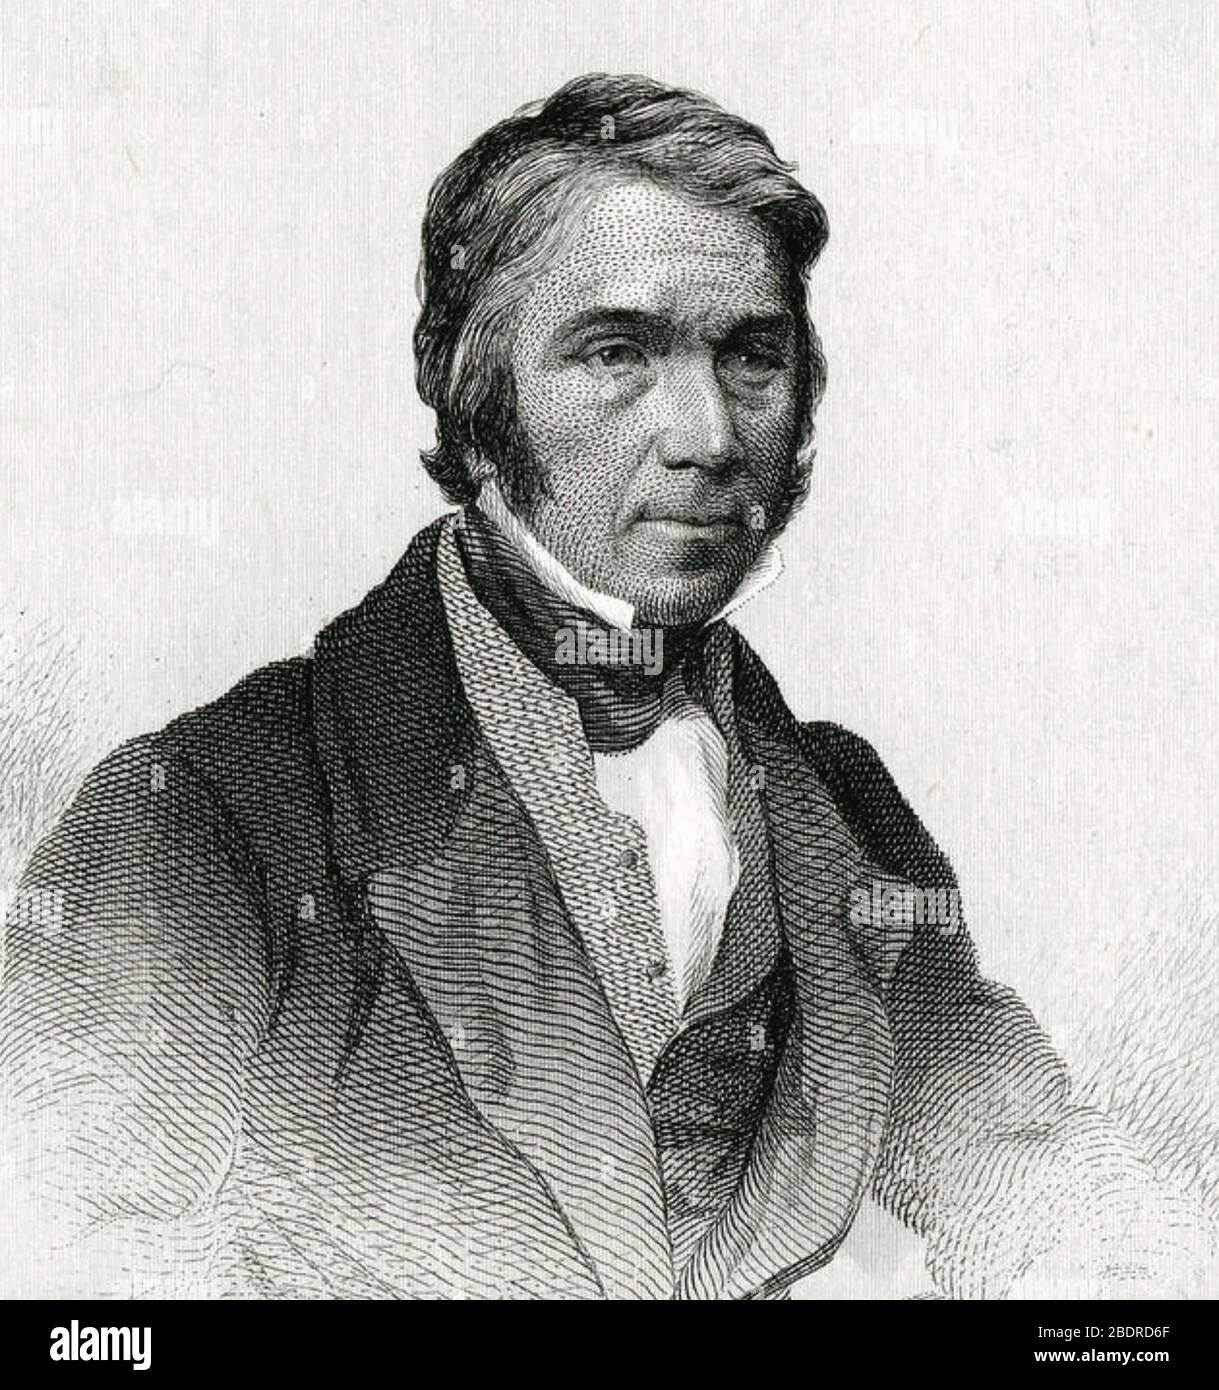 THOMAS CARLYLE (1795-1881) historien anglais, mathématicien, traducteur vers 1850 Banque D'Images